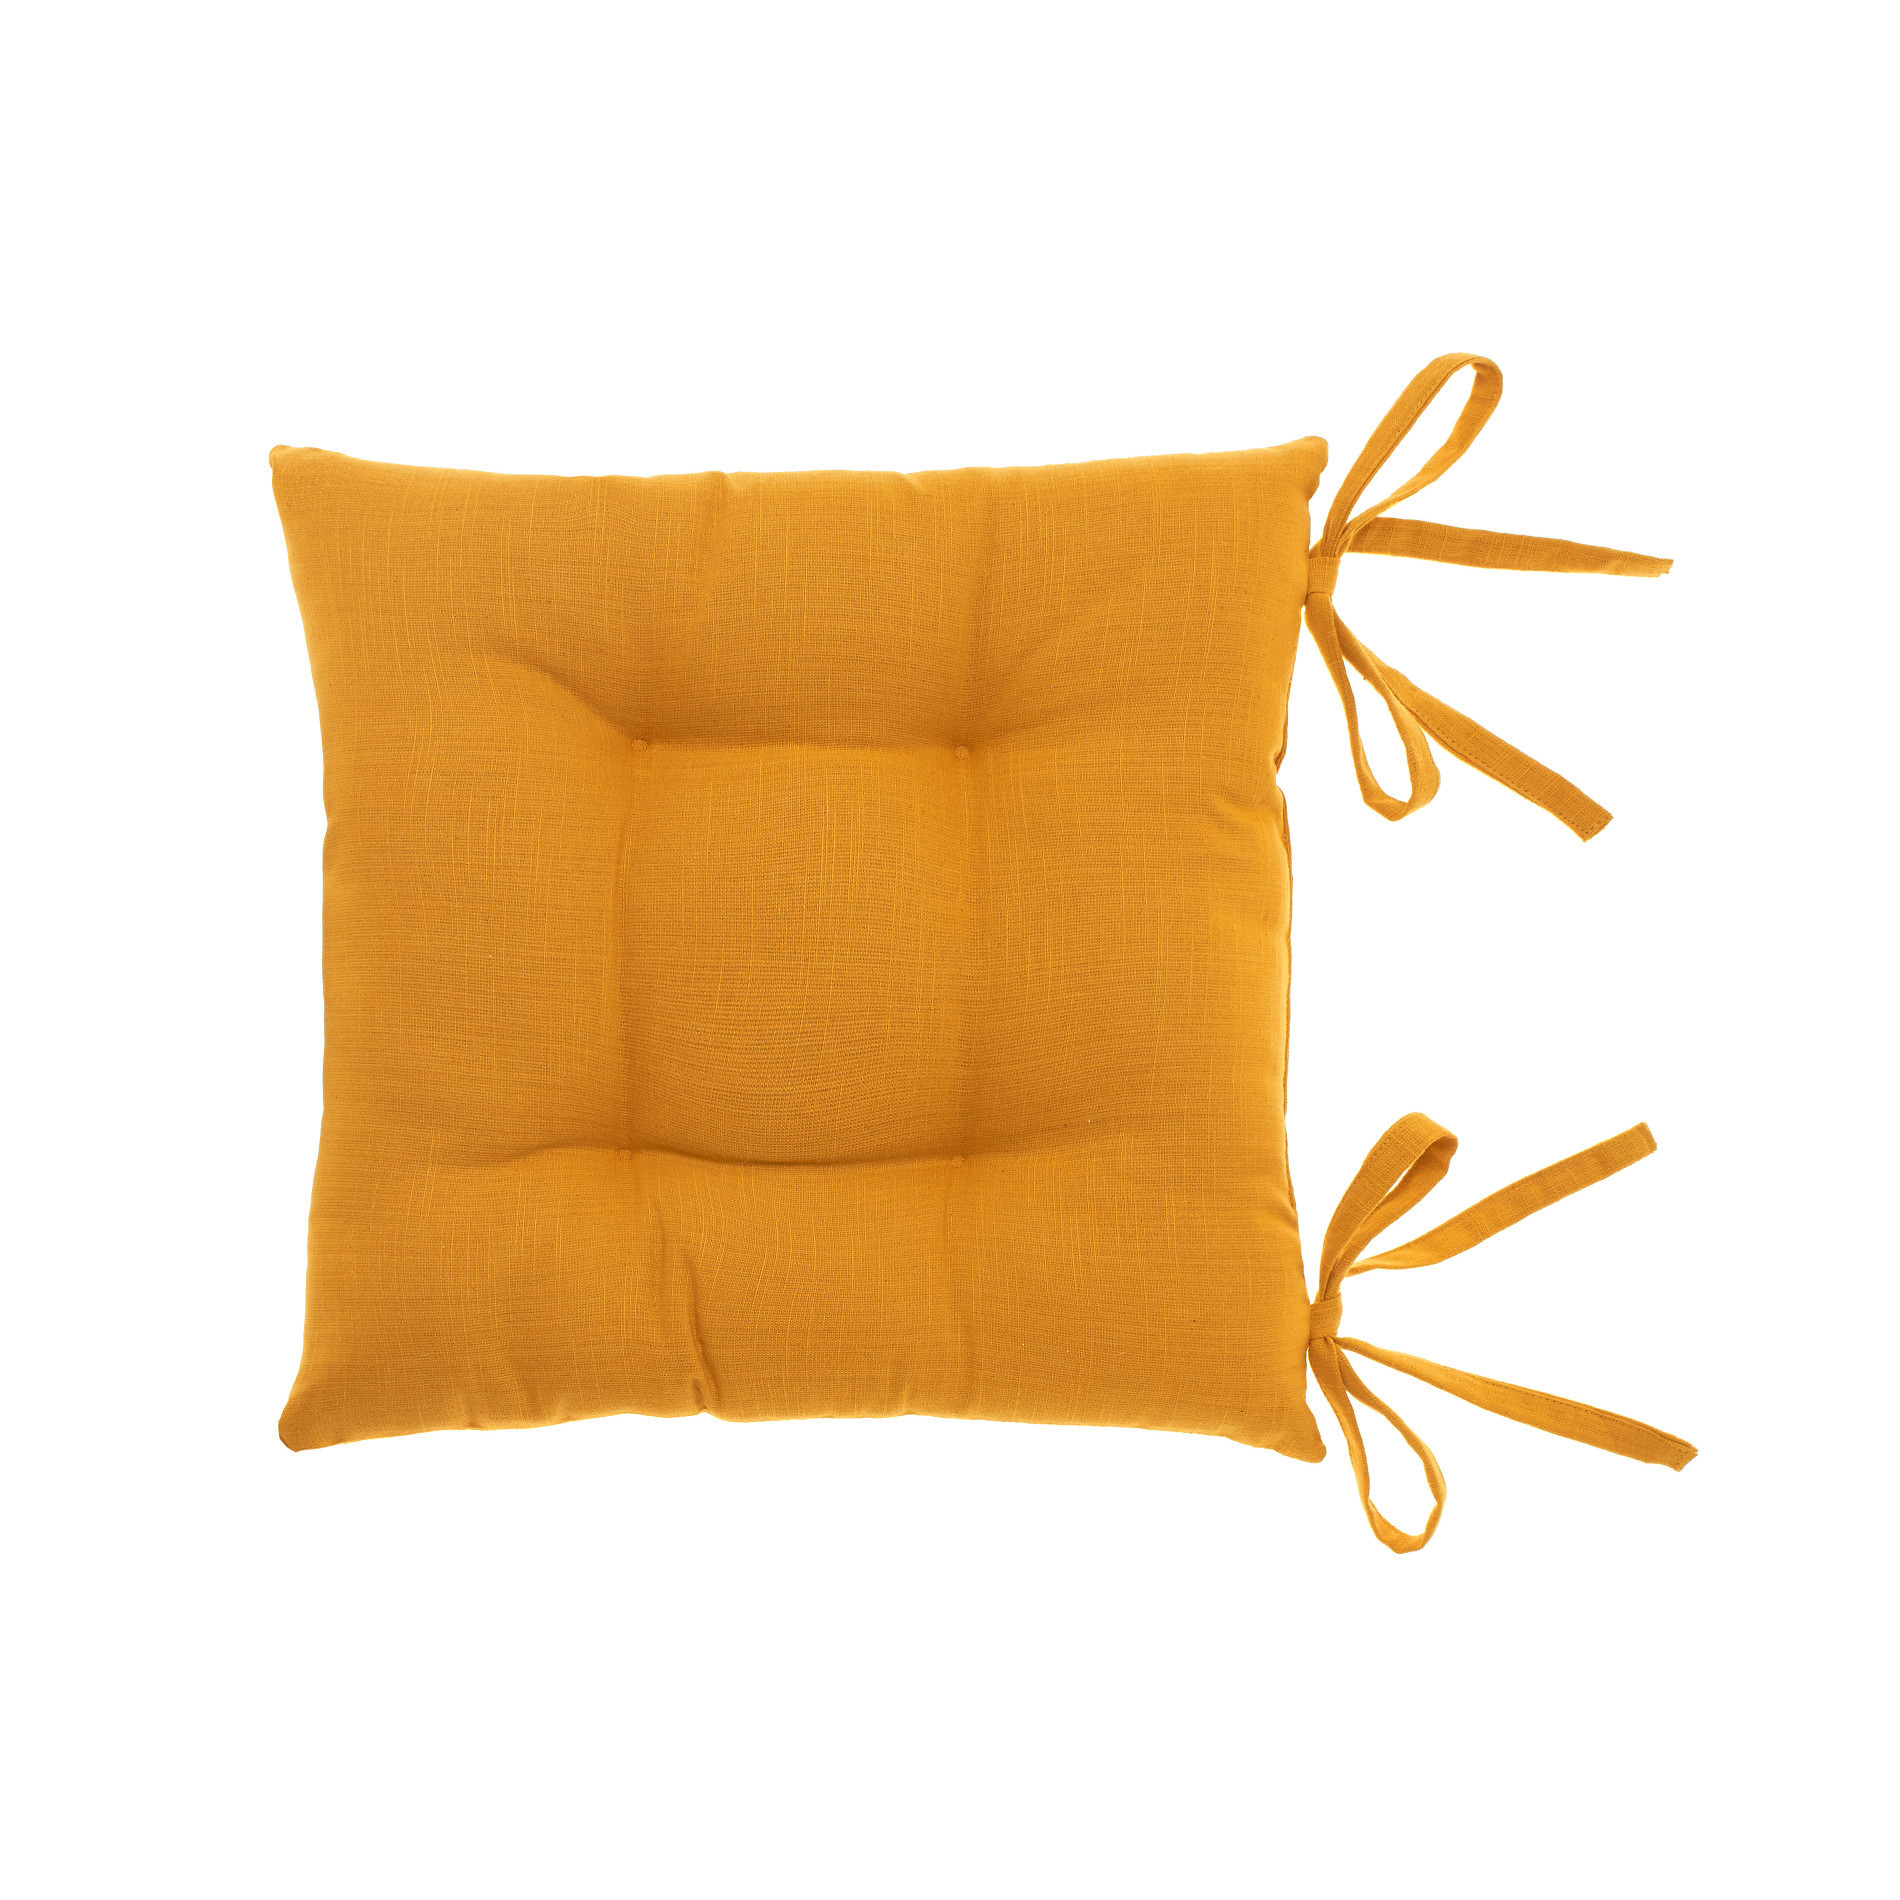 Меланжевая подушка на стул со слабым переплетением Coincasa, желто-коричневый